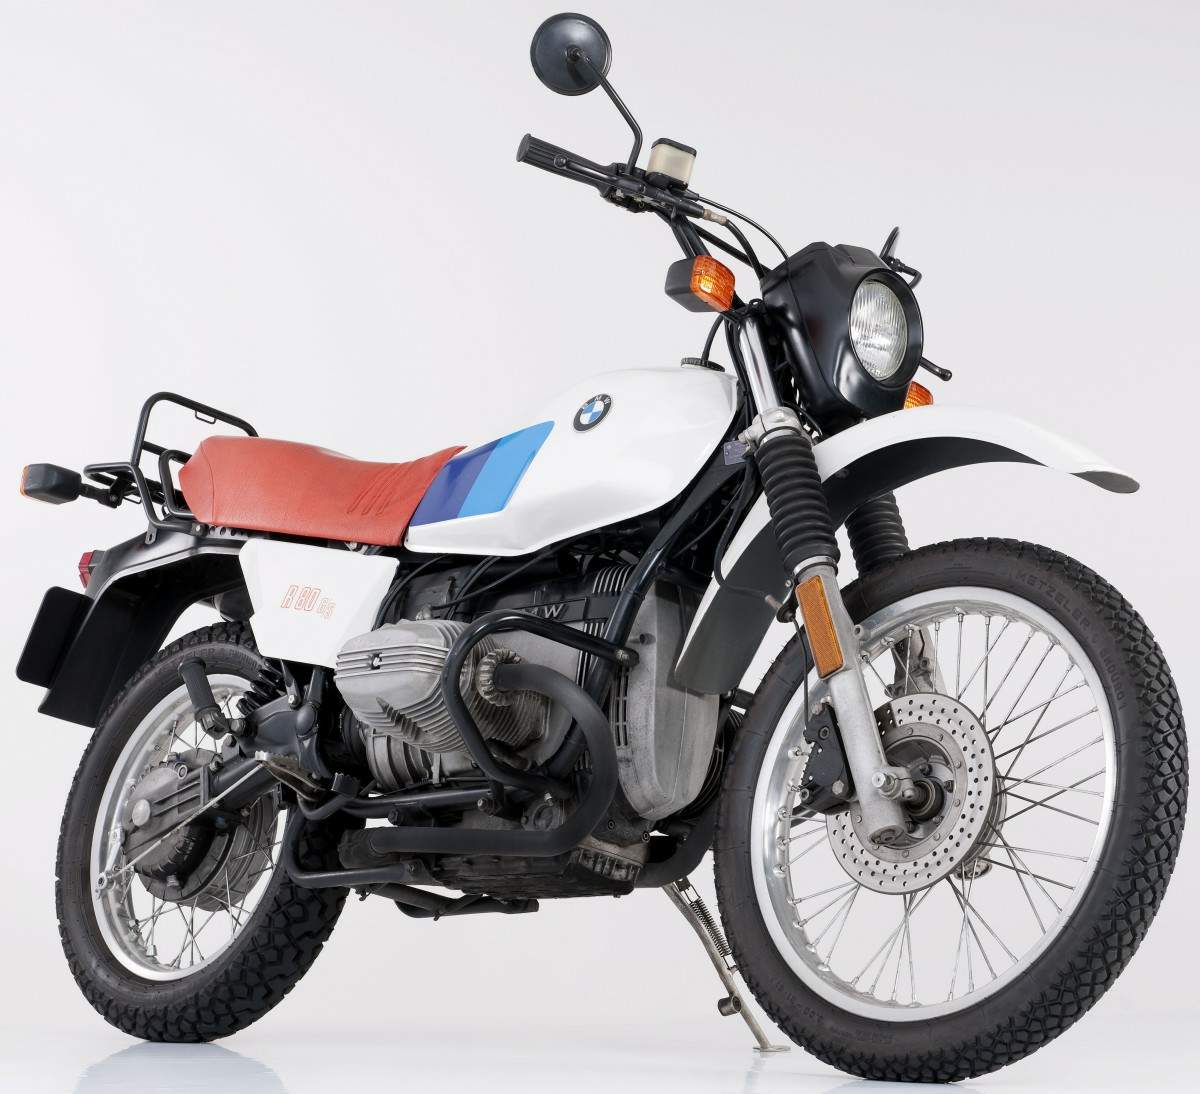 Мотоцикл BMW BMW R 80GS 1980 1980